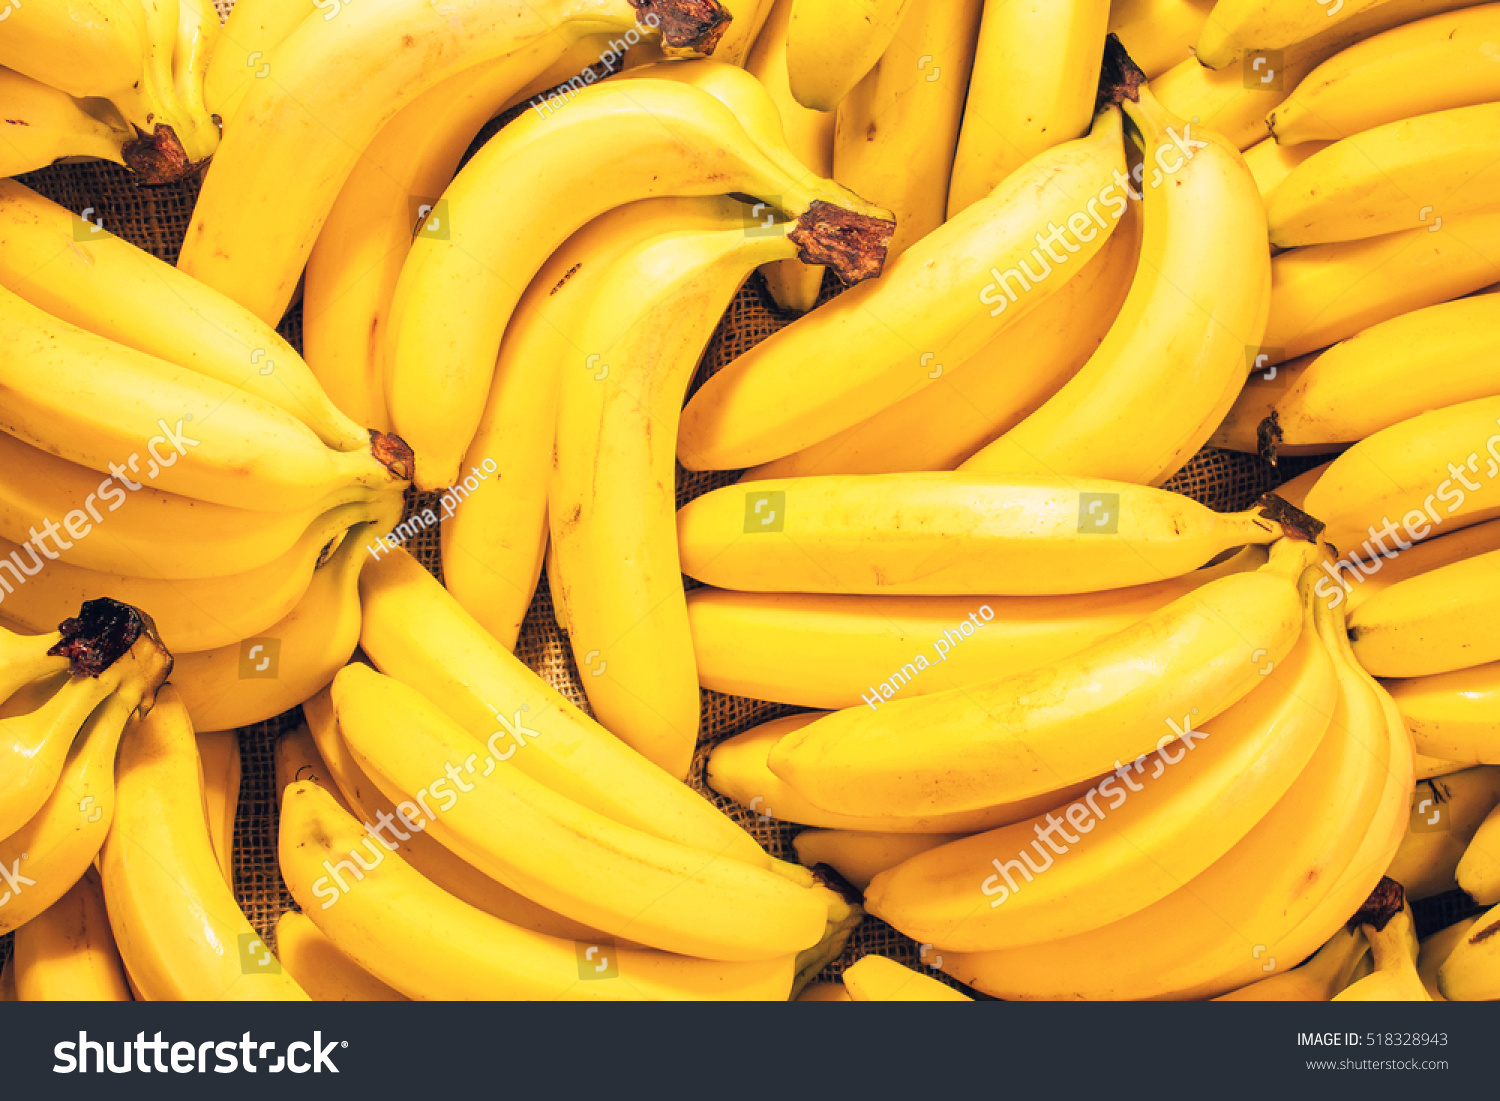 stock-photo-bananas-grapes-518328943.jpg